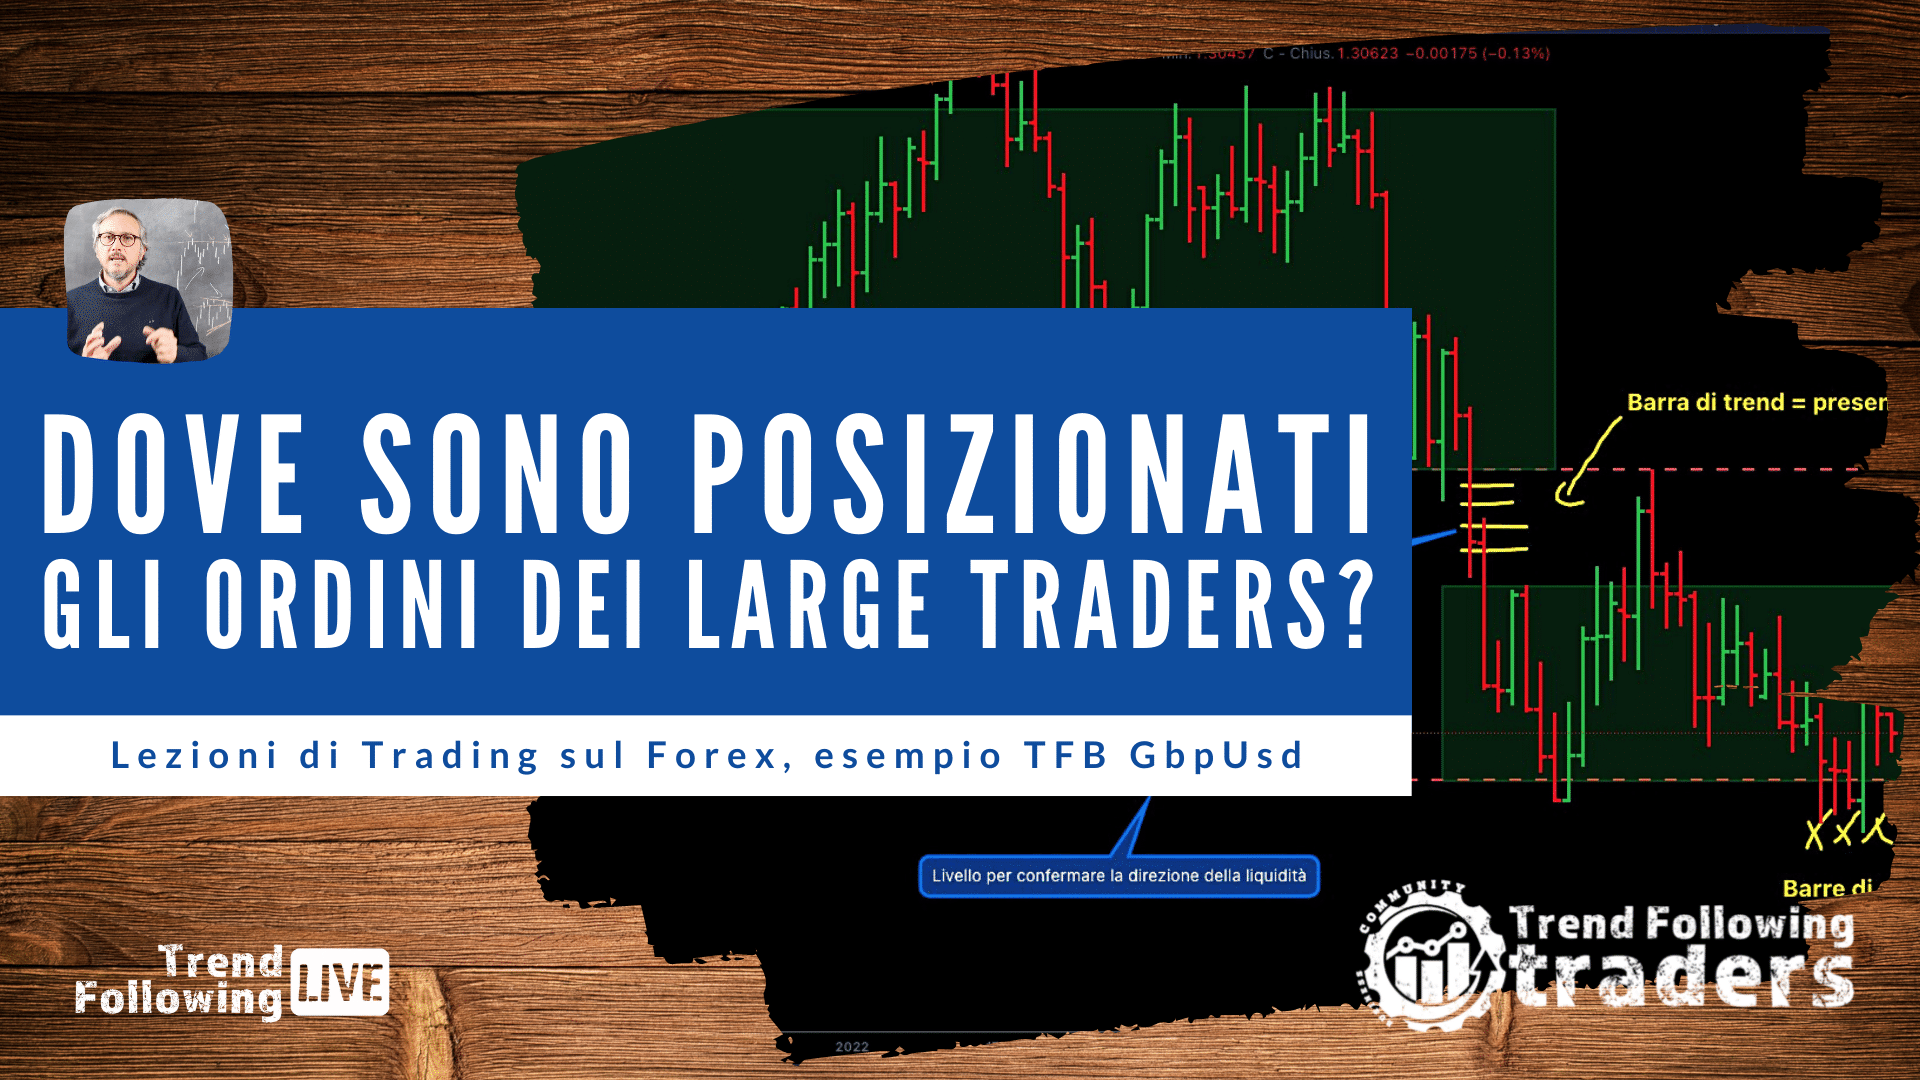 Lezioni di Trading sul Forex, esempio TFB GbpUsd (large traders)